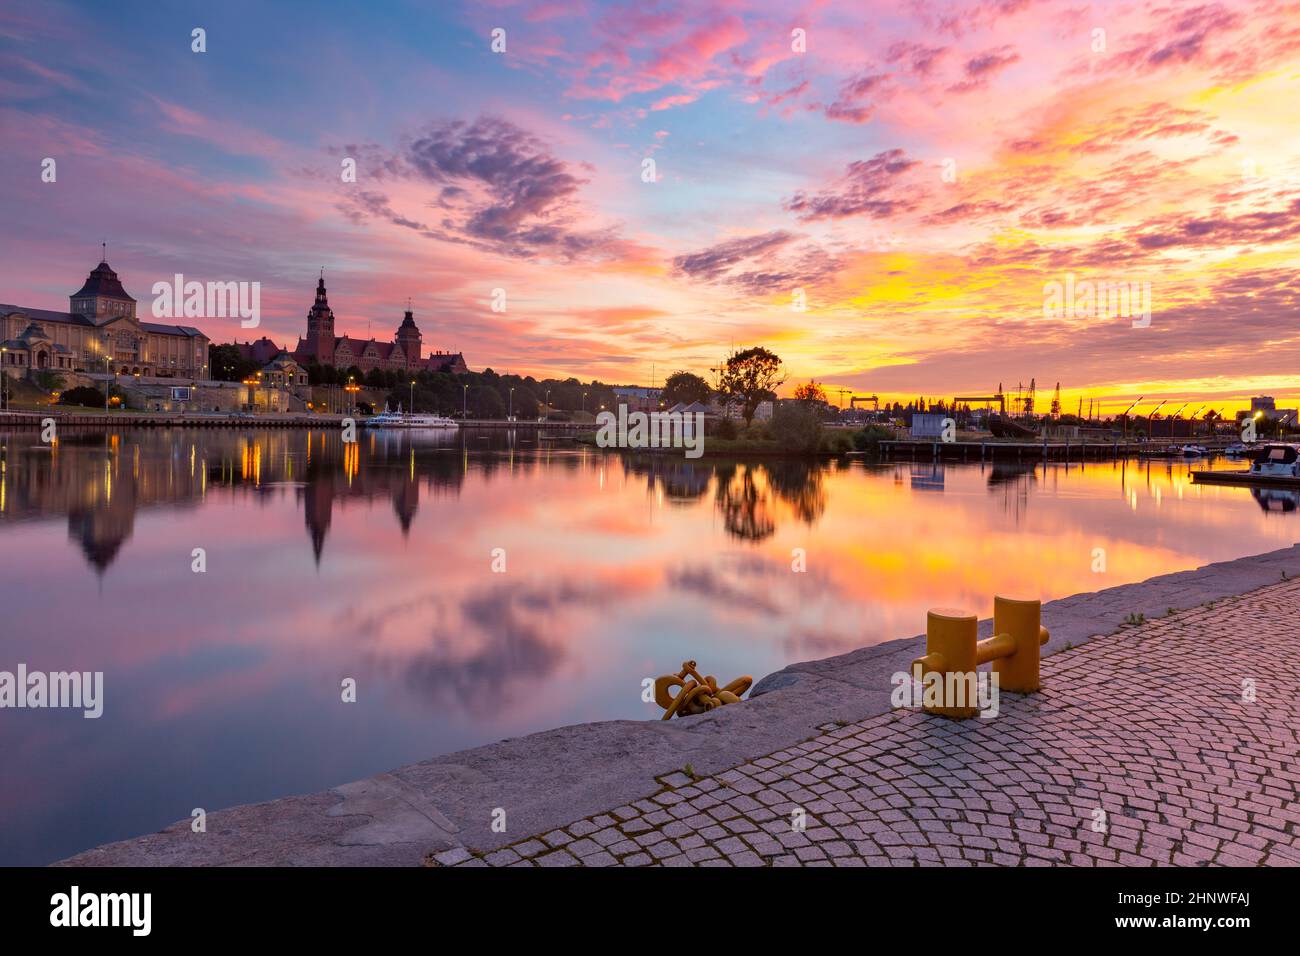 Panorama del casco antiguo con reflexión en el río Oder al atardecer, Szczecin, Polonia Foto de stock